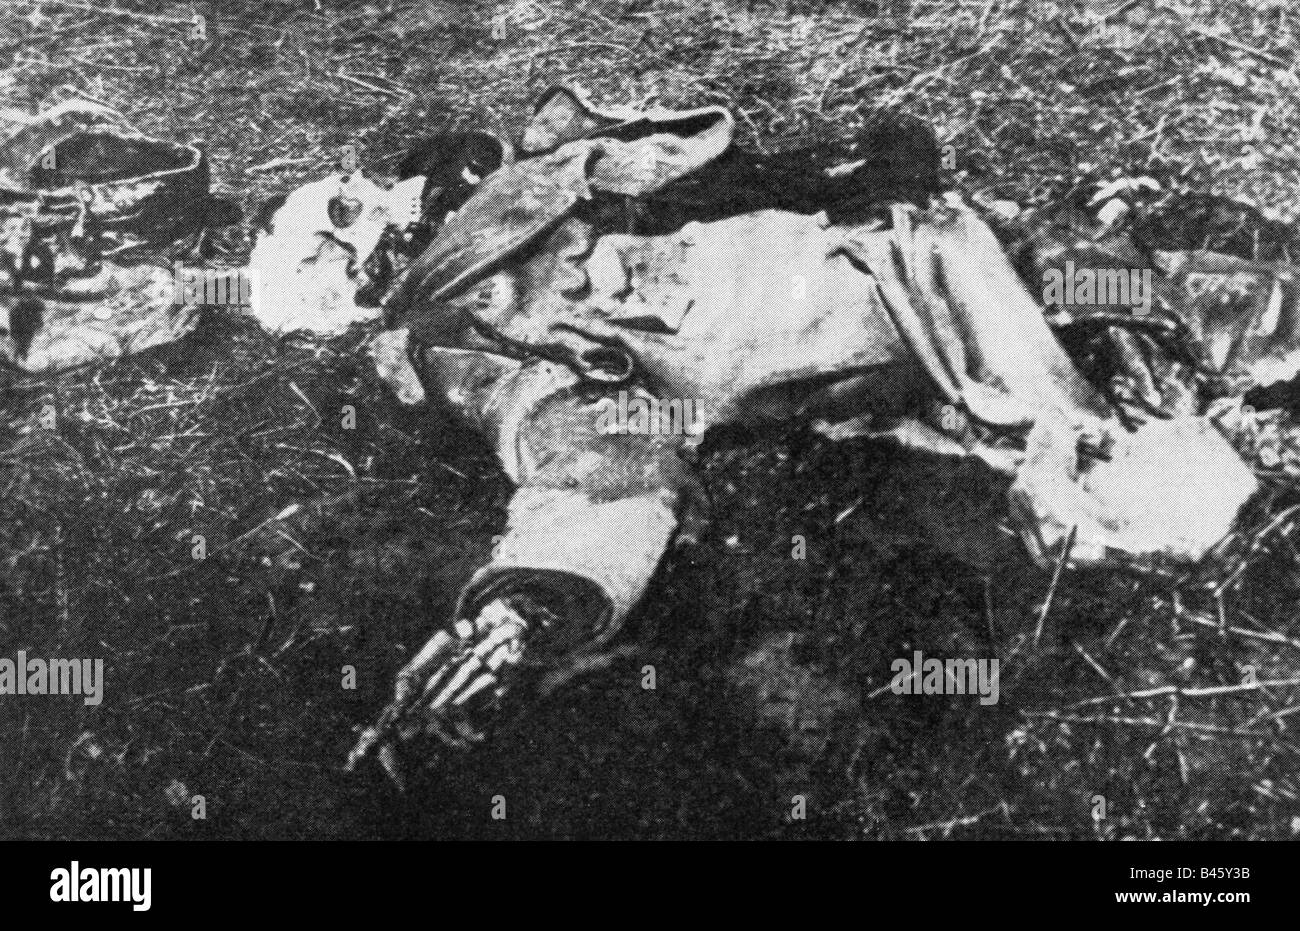 Événements, première Guerre mondiale / première Guerre mondiale, Front occidental, Belgique, corps d'un soldat allemand, tué en octobre 1914 près de Ypern, Banque D'Images